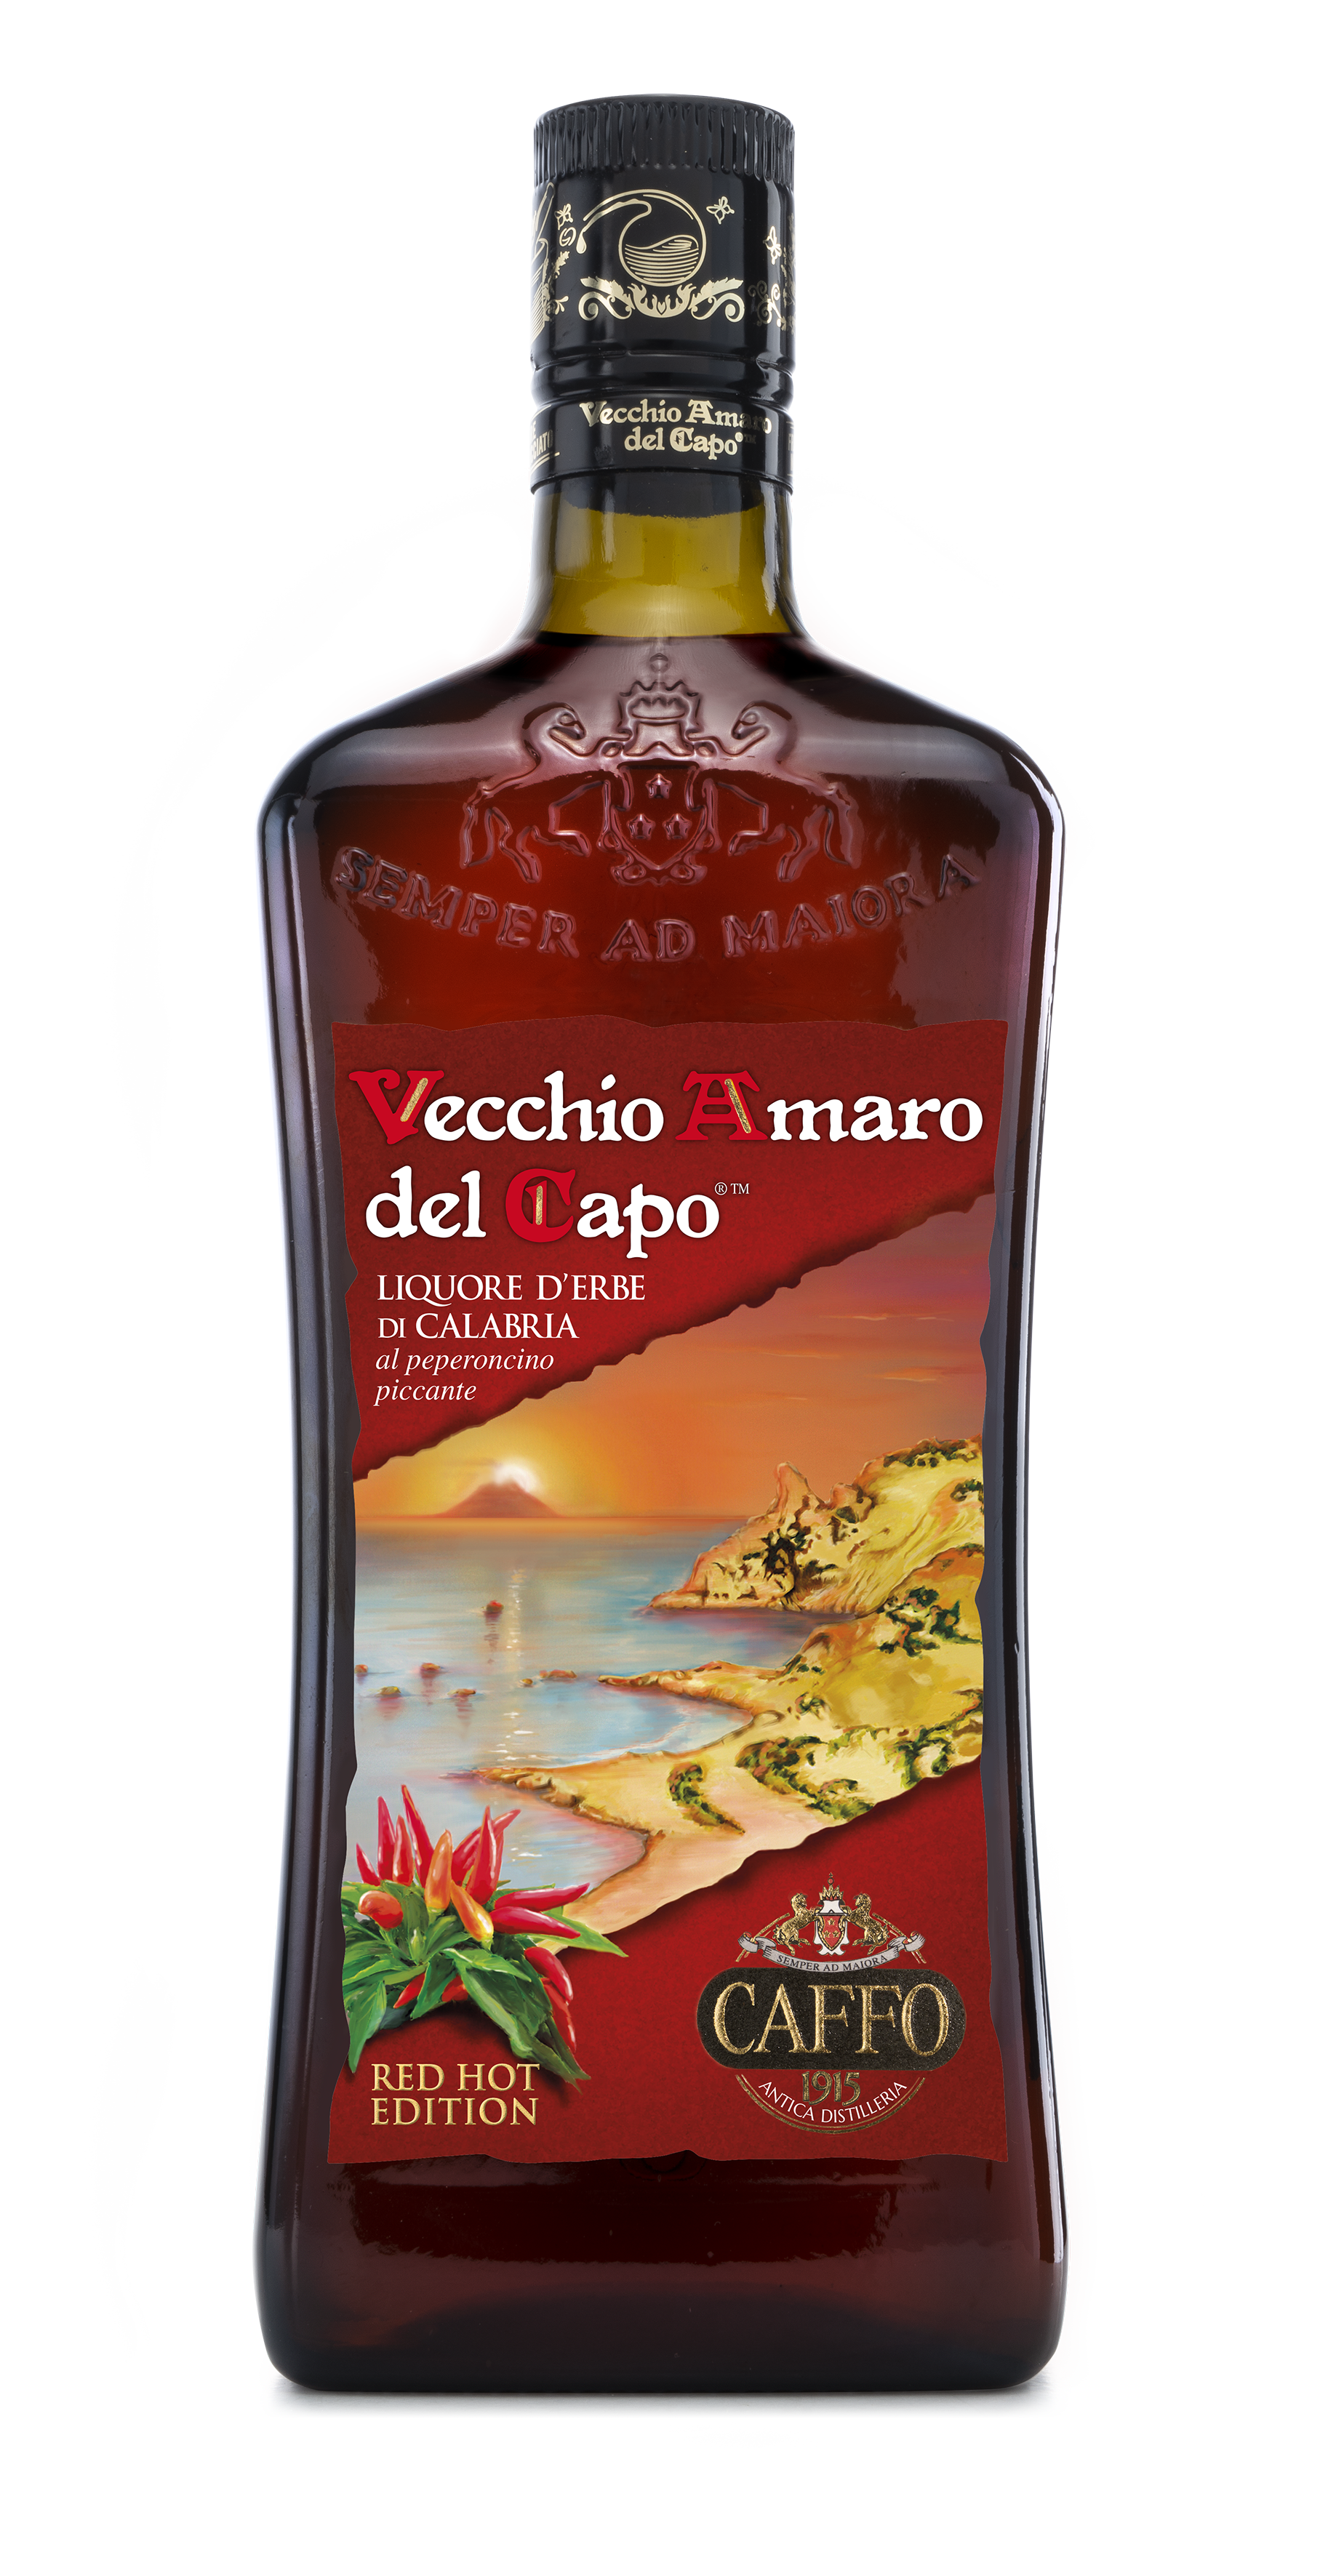 Vecchio Amaro del Capo 'Hot Chili Pepper', Caffo - Skurnik Wines